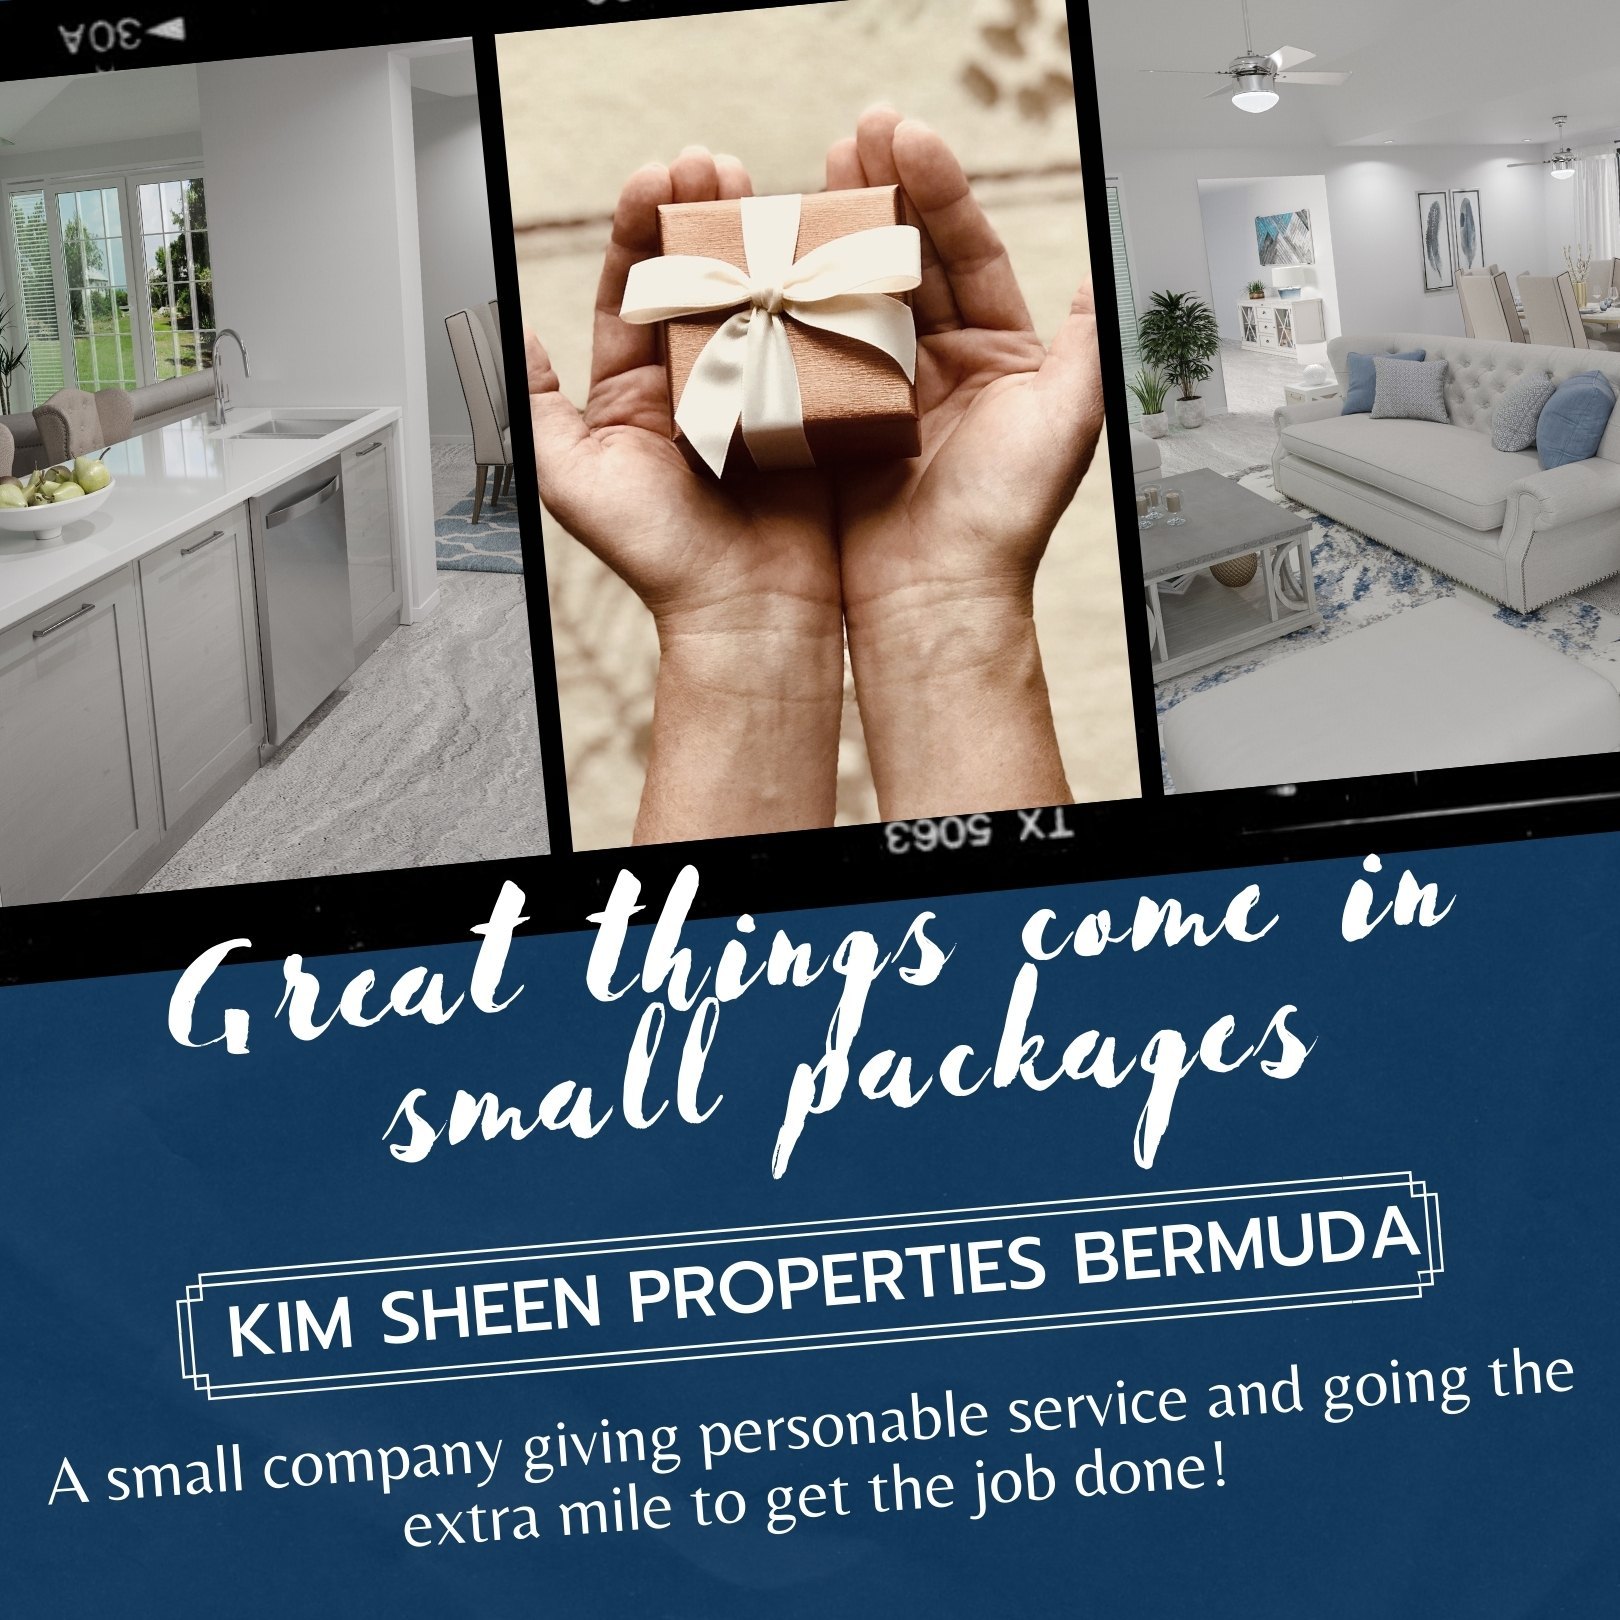 Kim Sheen Properties